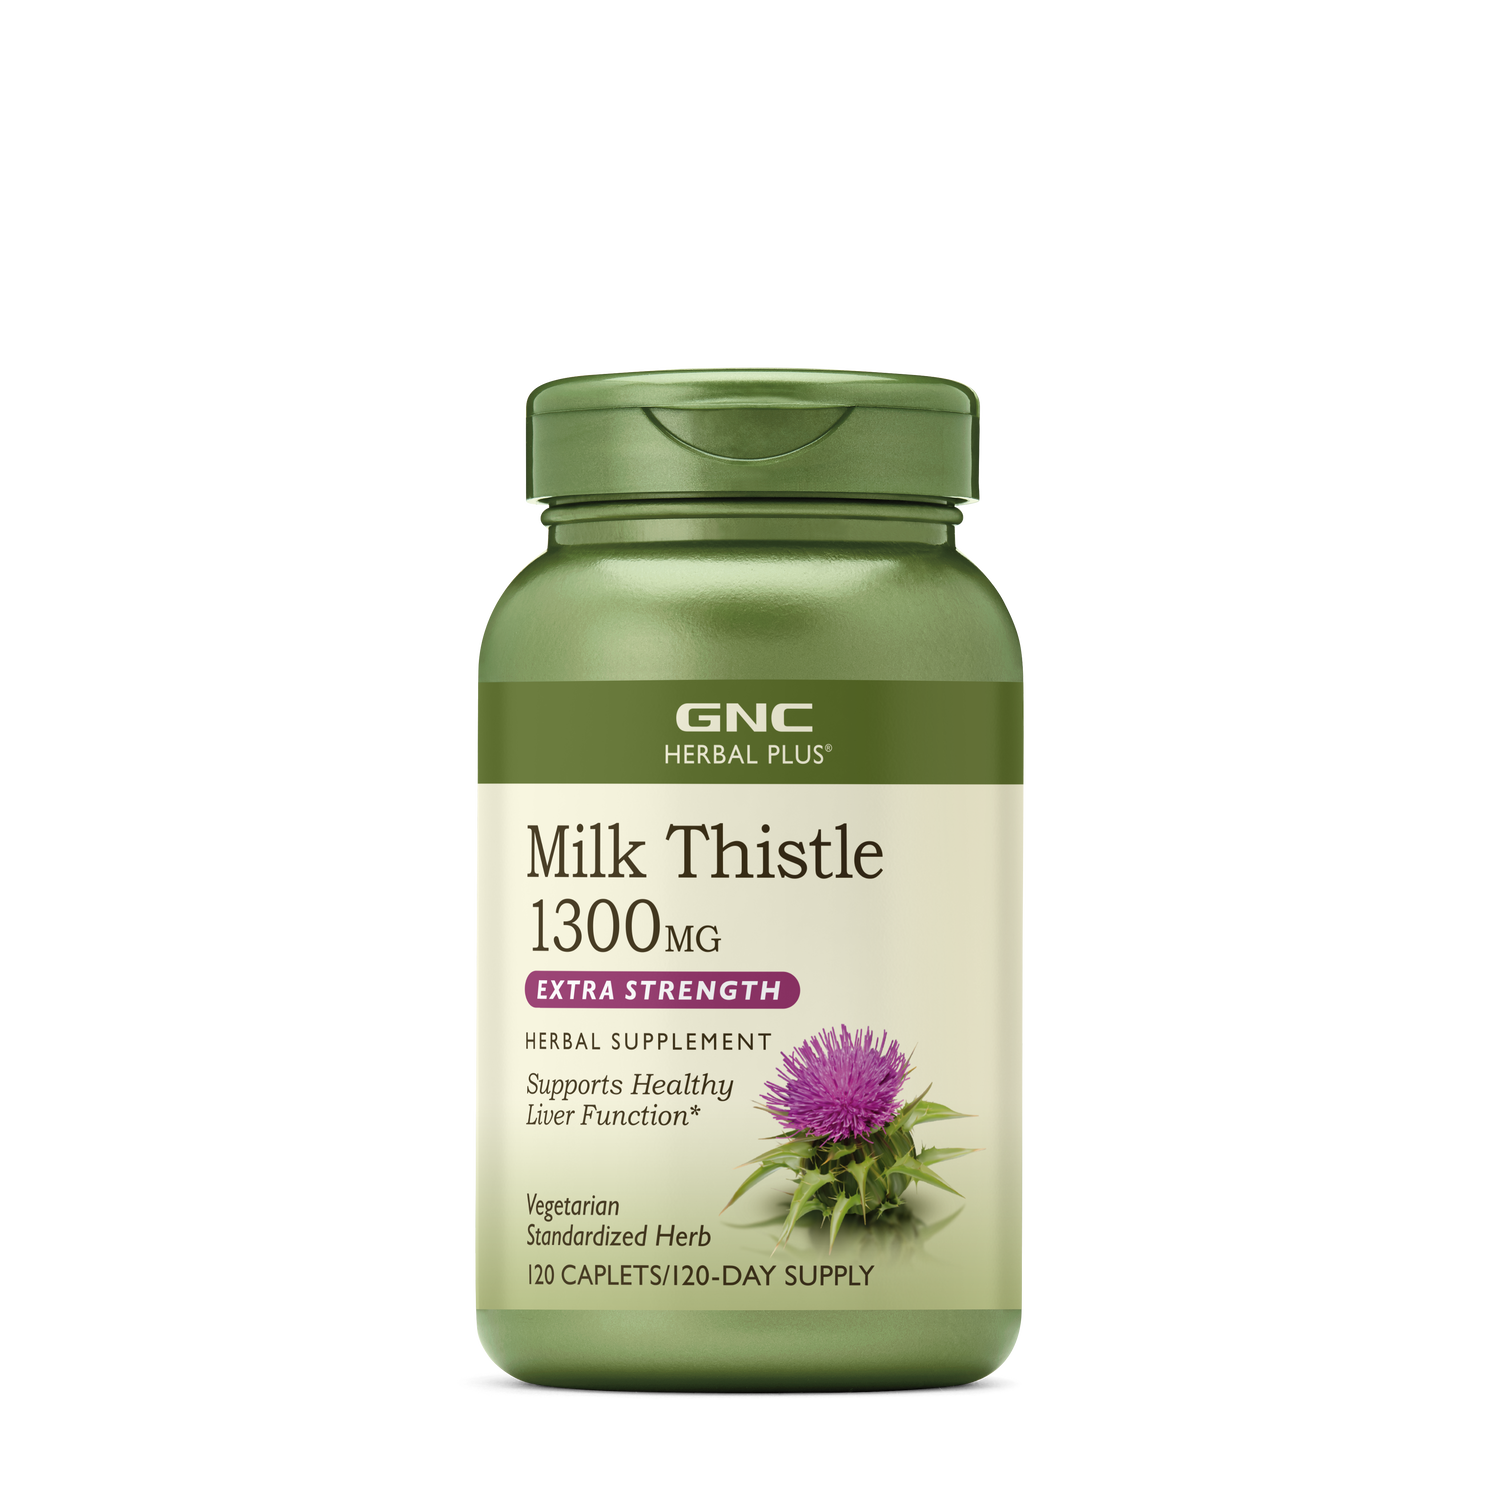 GNC Herbal Plus Milk Thistle 1300Mg Healthy - 120 Caplets (120 Servings)